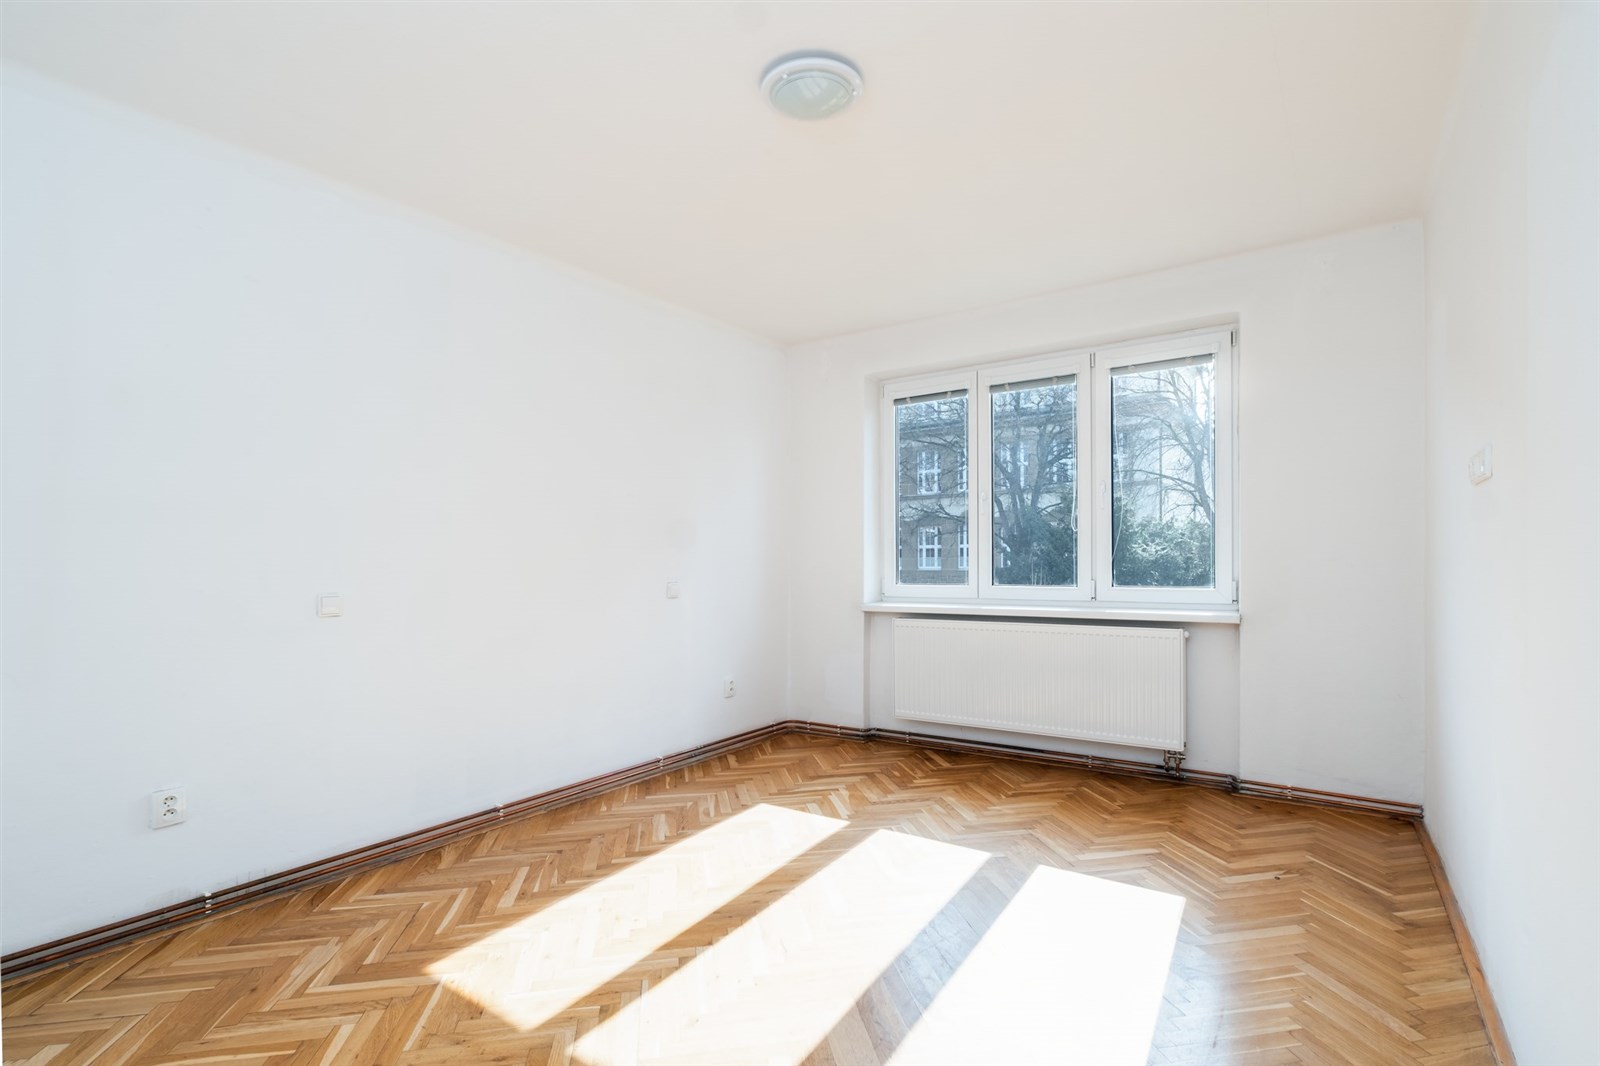 prázdná místnost s přirozené světlo, parketová podlaha, a radiátor